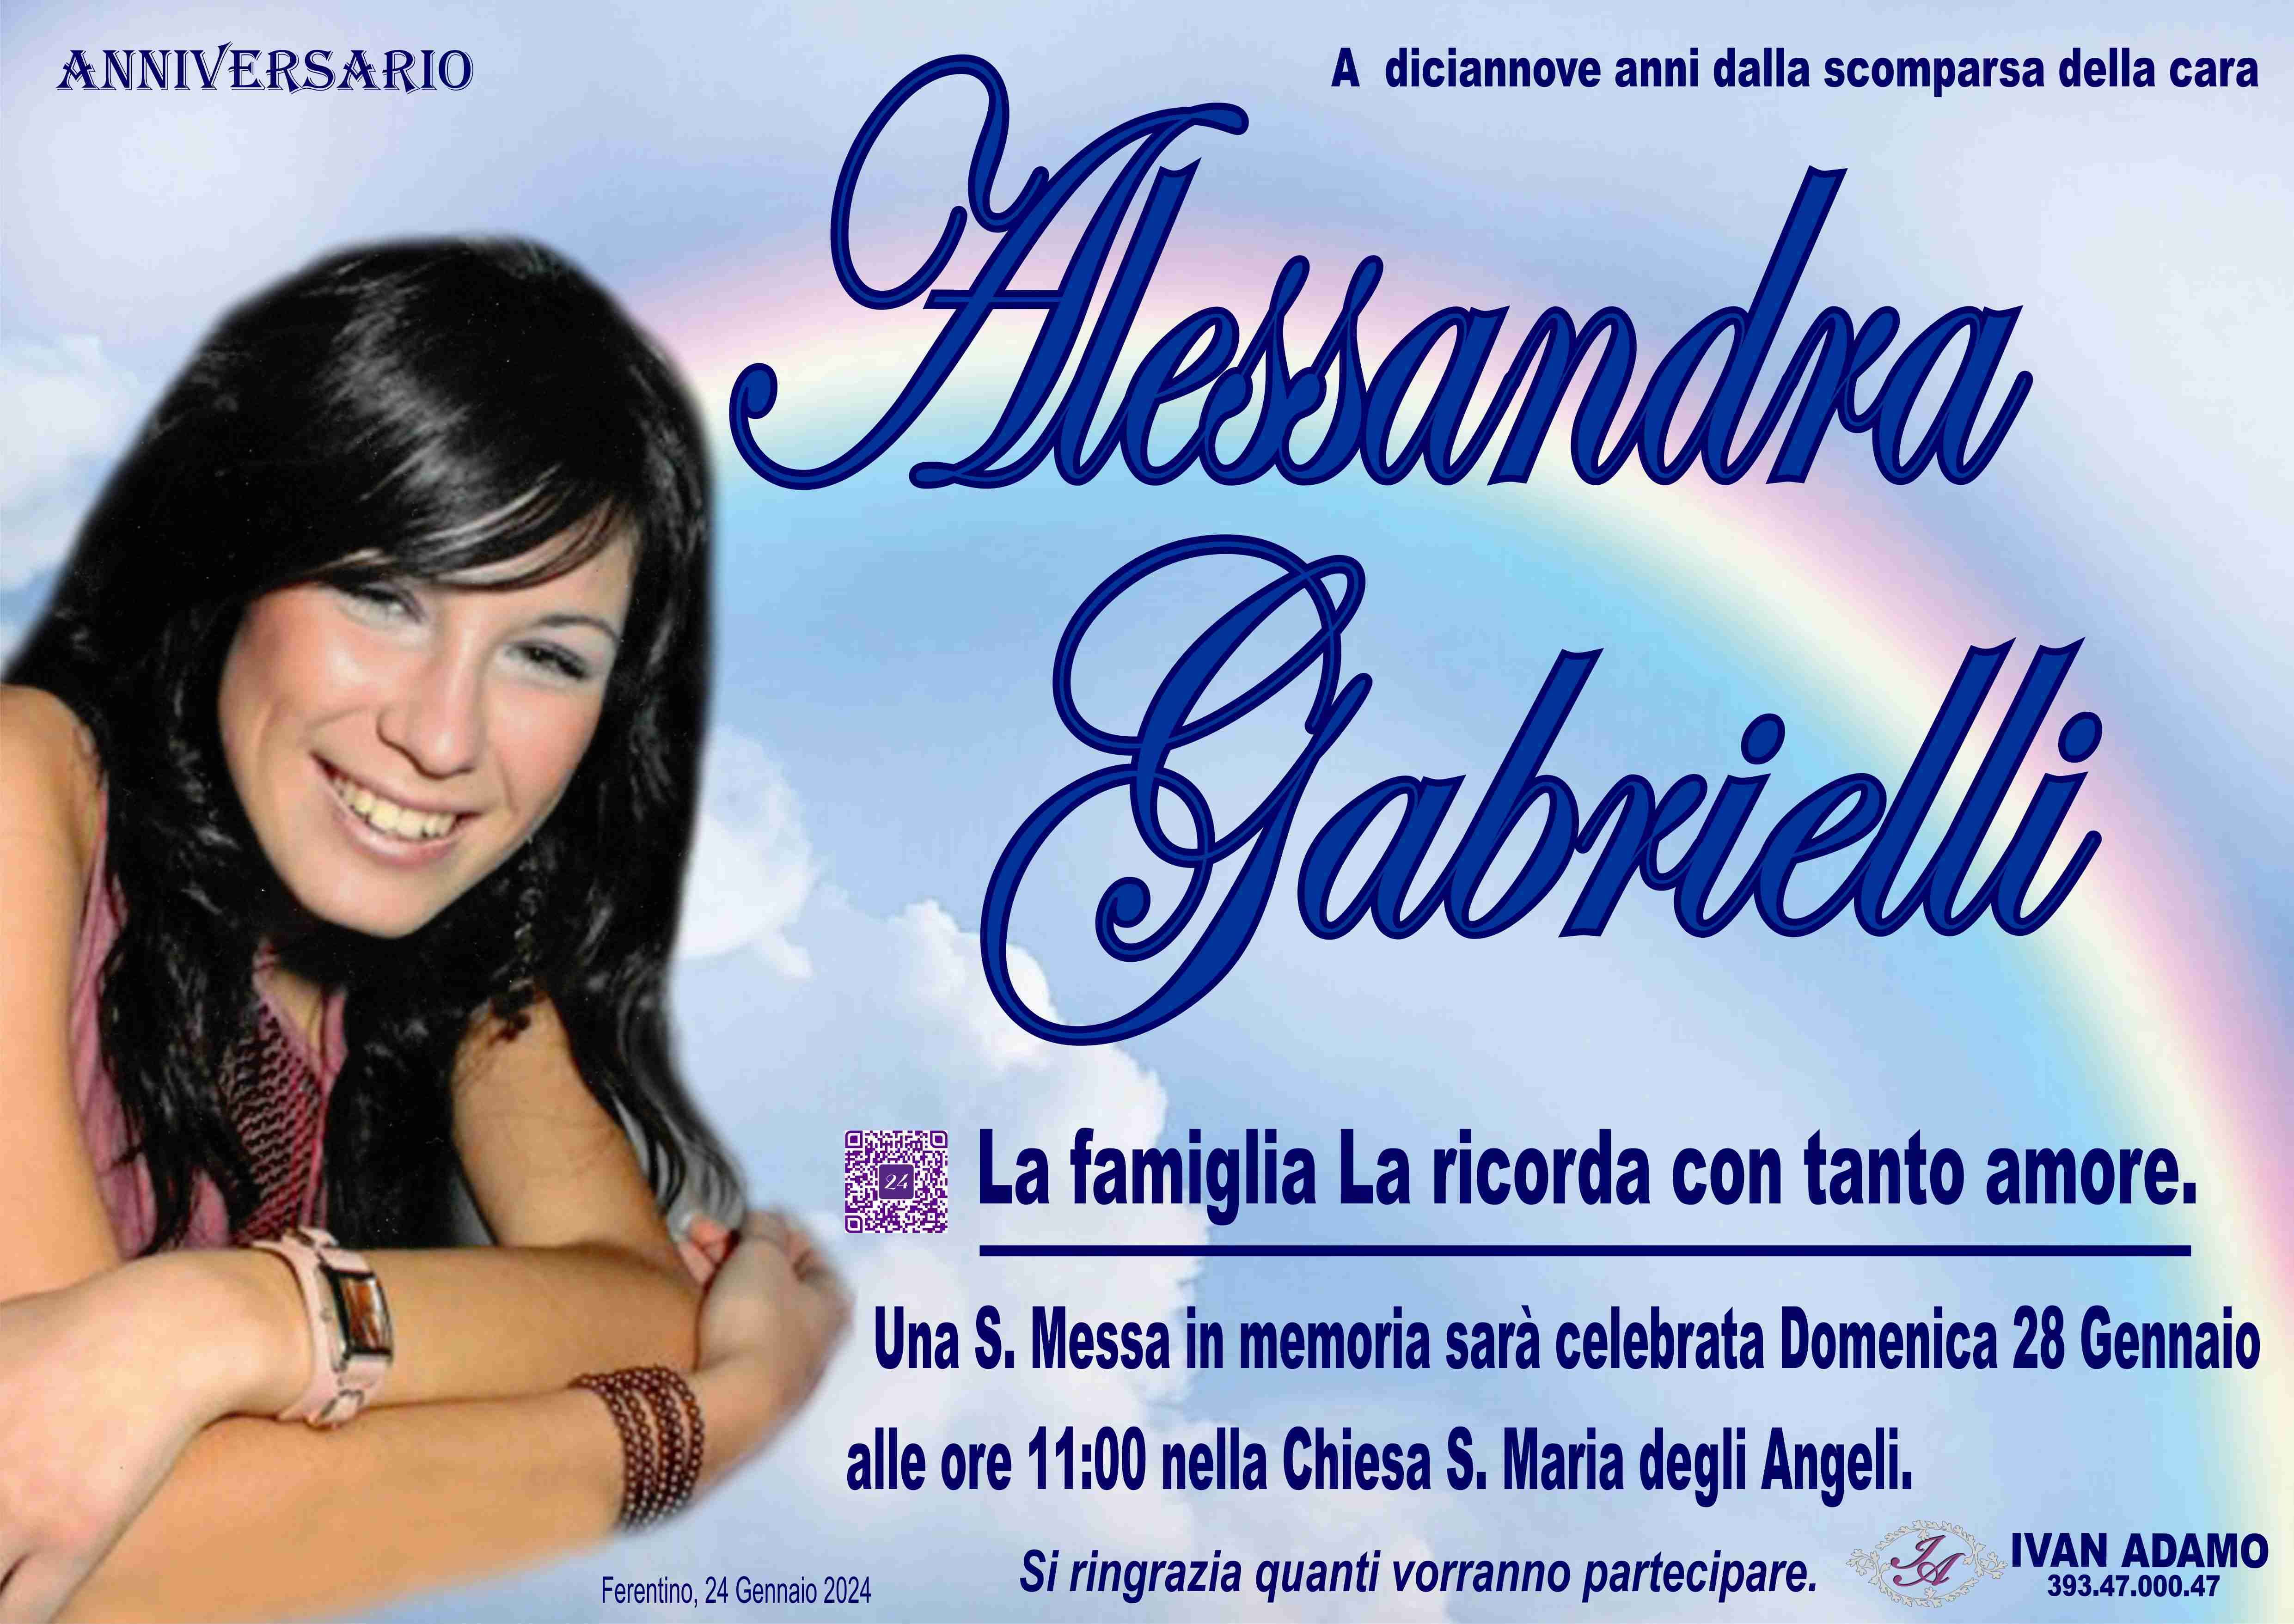 Alessandra Gabrielli